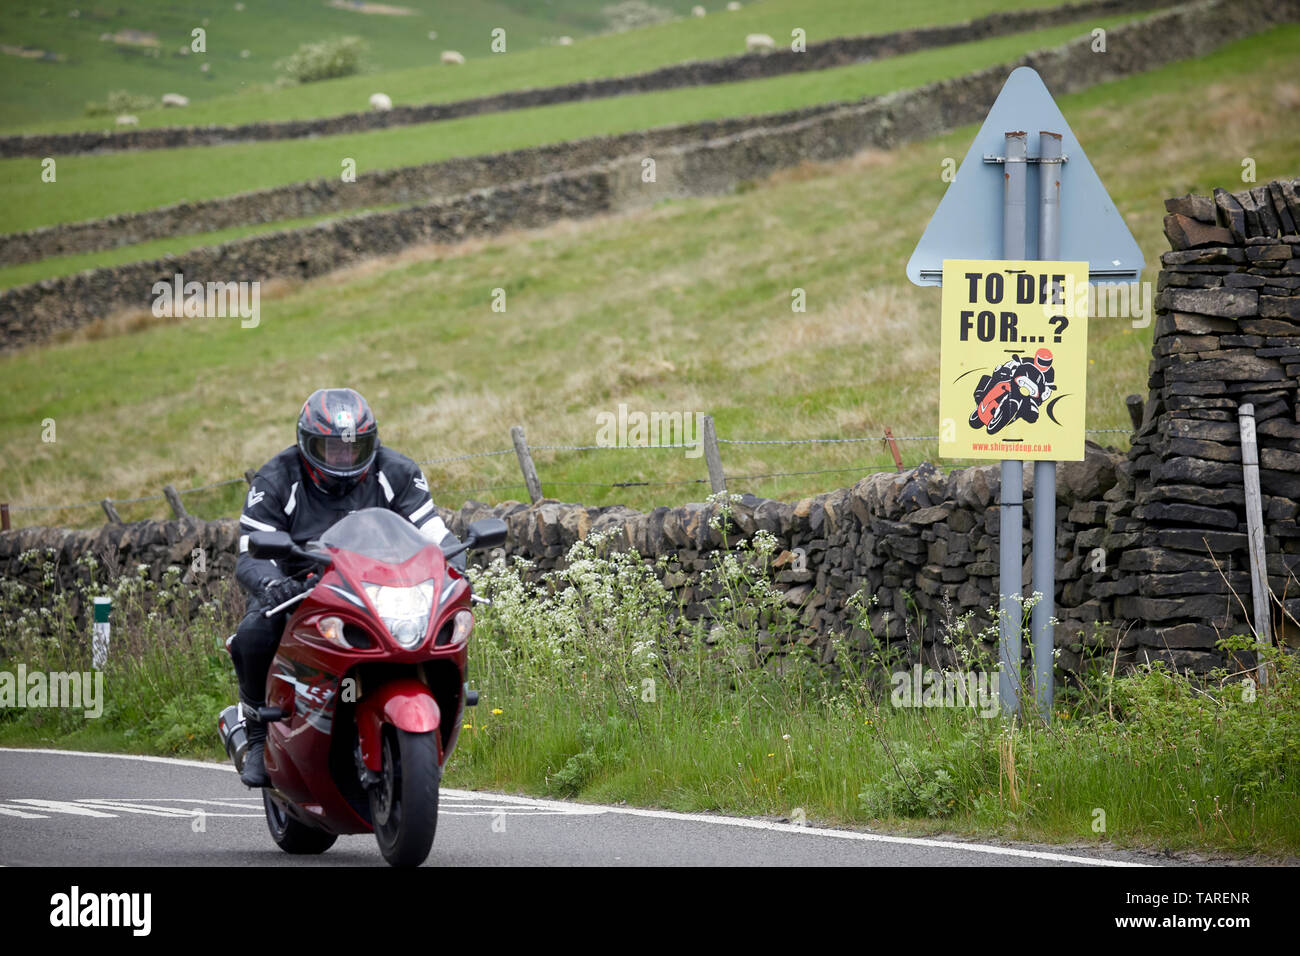 A57 snake pass in Glossop, Derbyshire strada pericolosa cartello di avviso per i motociclisti a morire per Foto Stock